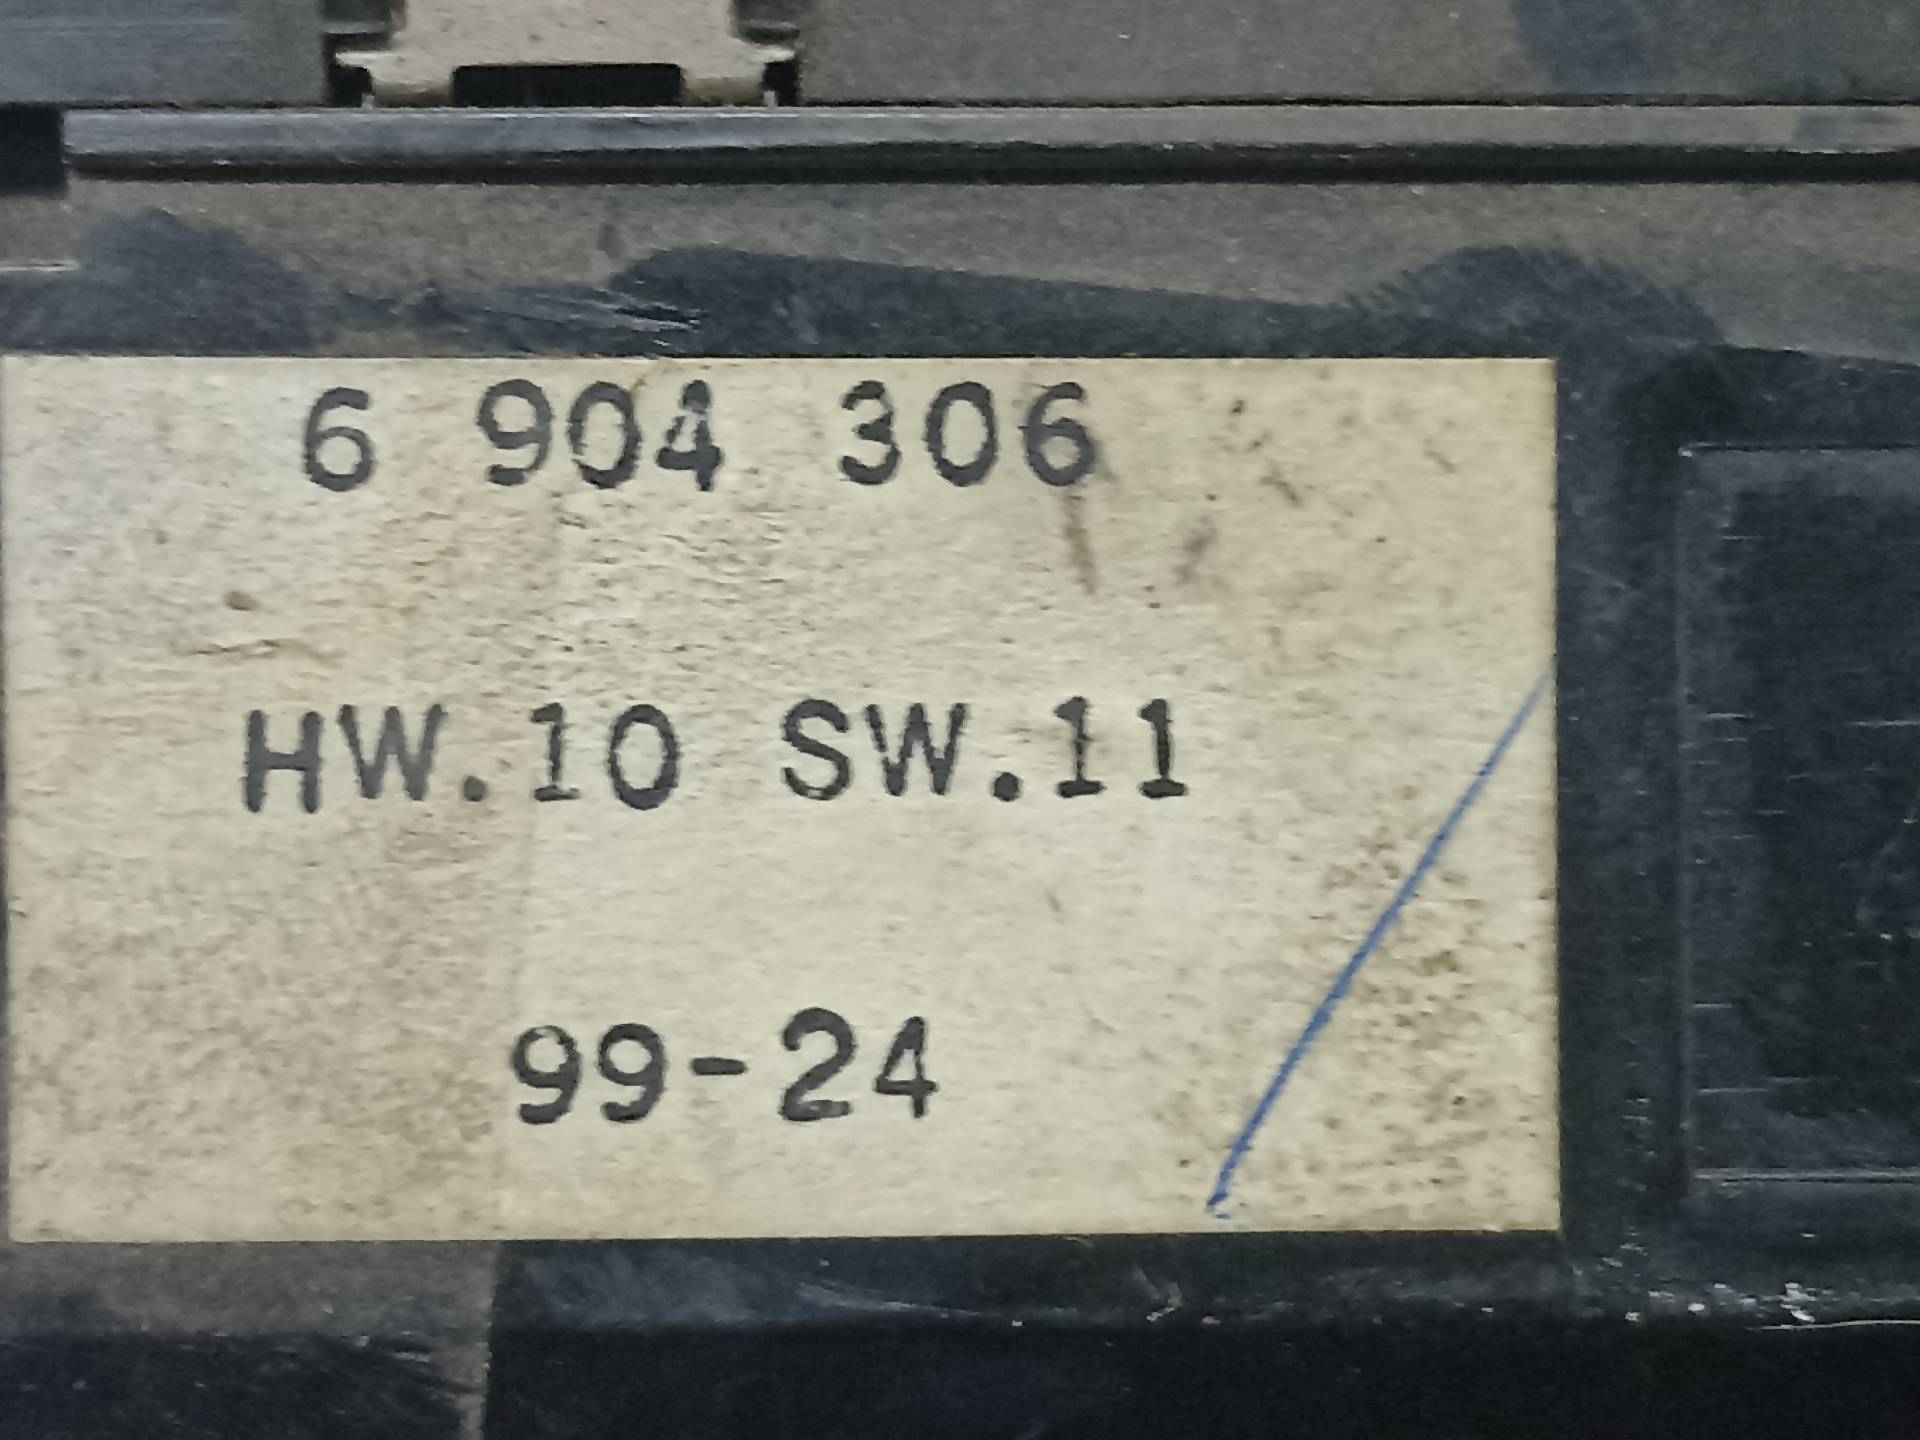 OPEL 5 Series E39 (1995-2004) Vänster främre dörrfönsterbrytare 6904306 24312899